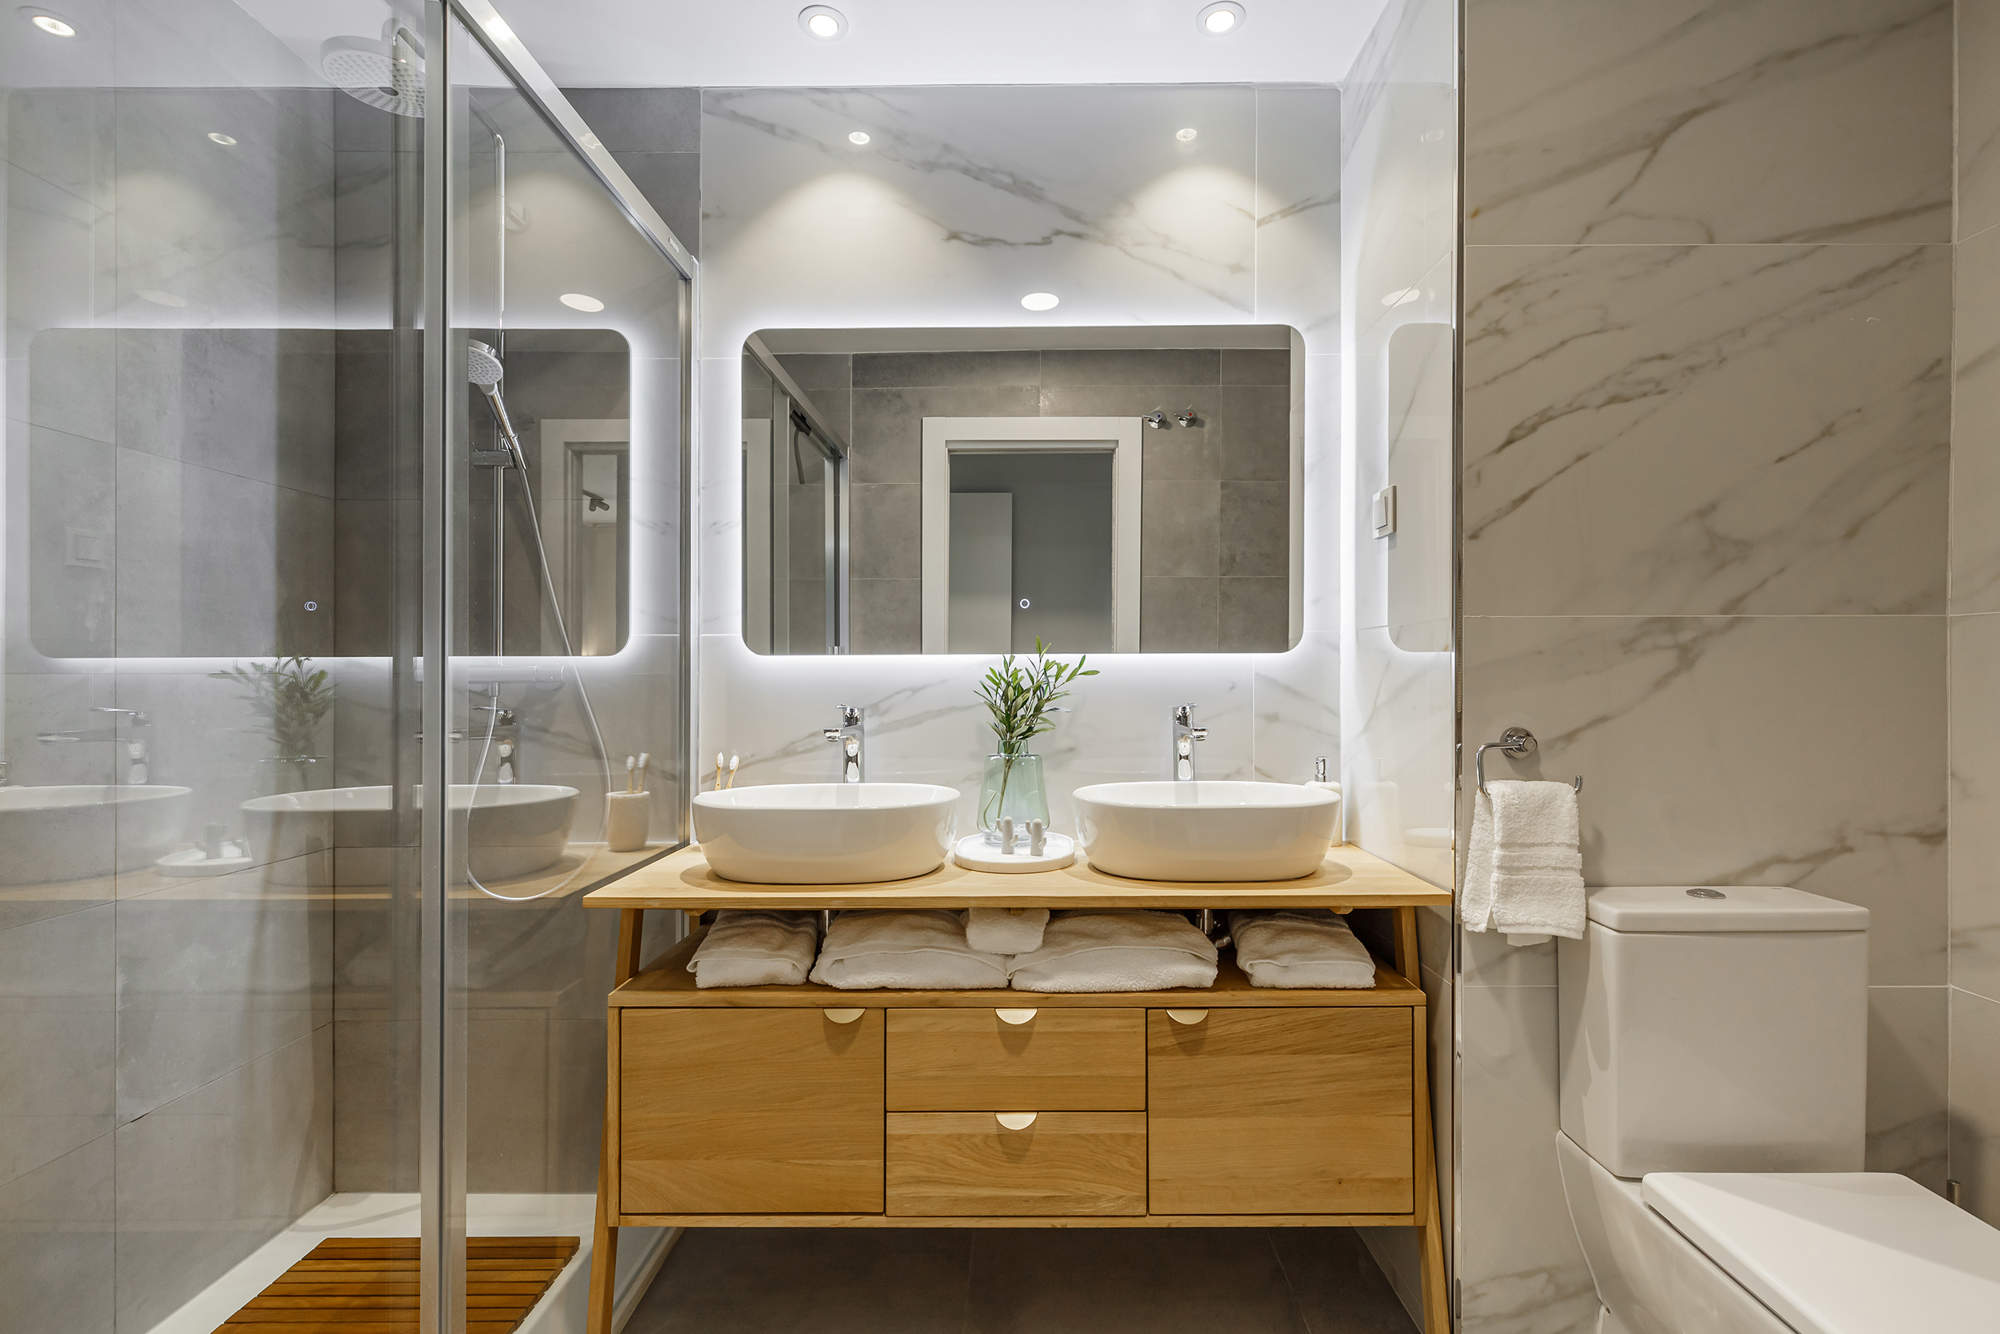 Baño con revestimientos de mármol y mueble de madera con dos lavabos